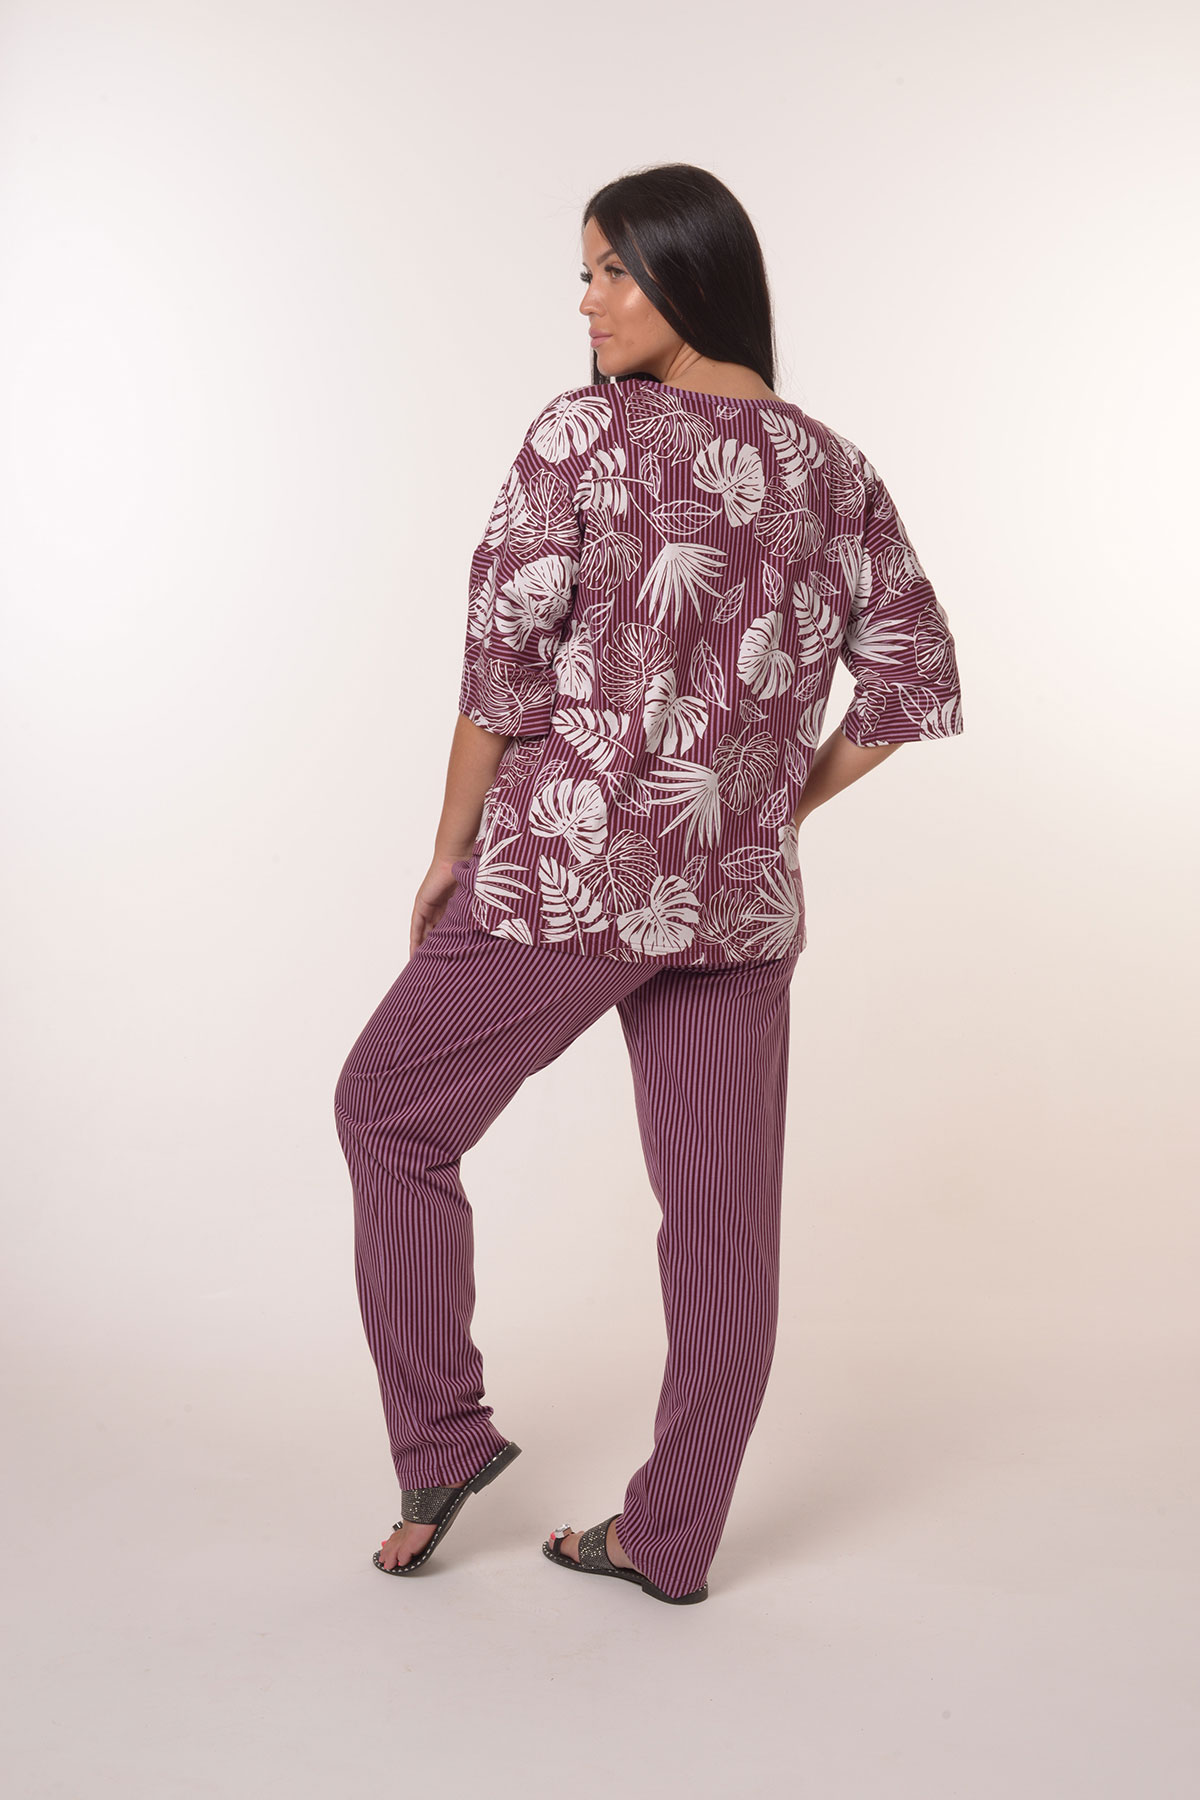 Жен. костюм повседневный арт. 23-0390 Фиолетовый р. 66 Моделлини, размер 66 - фото 4